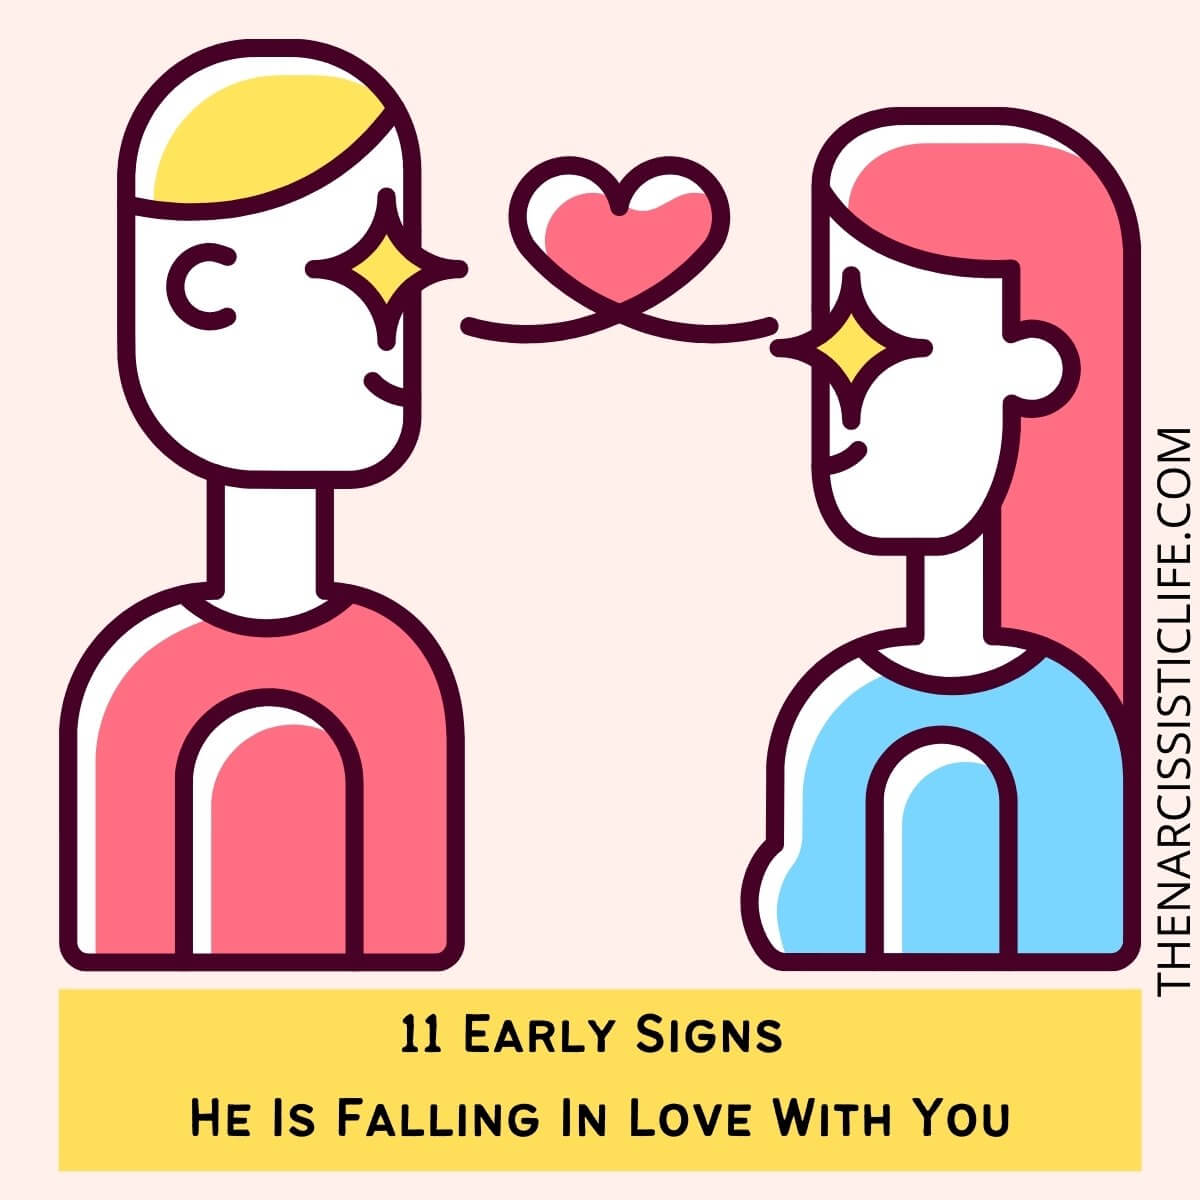 When a guy is falling in love